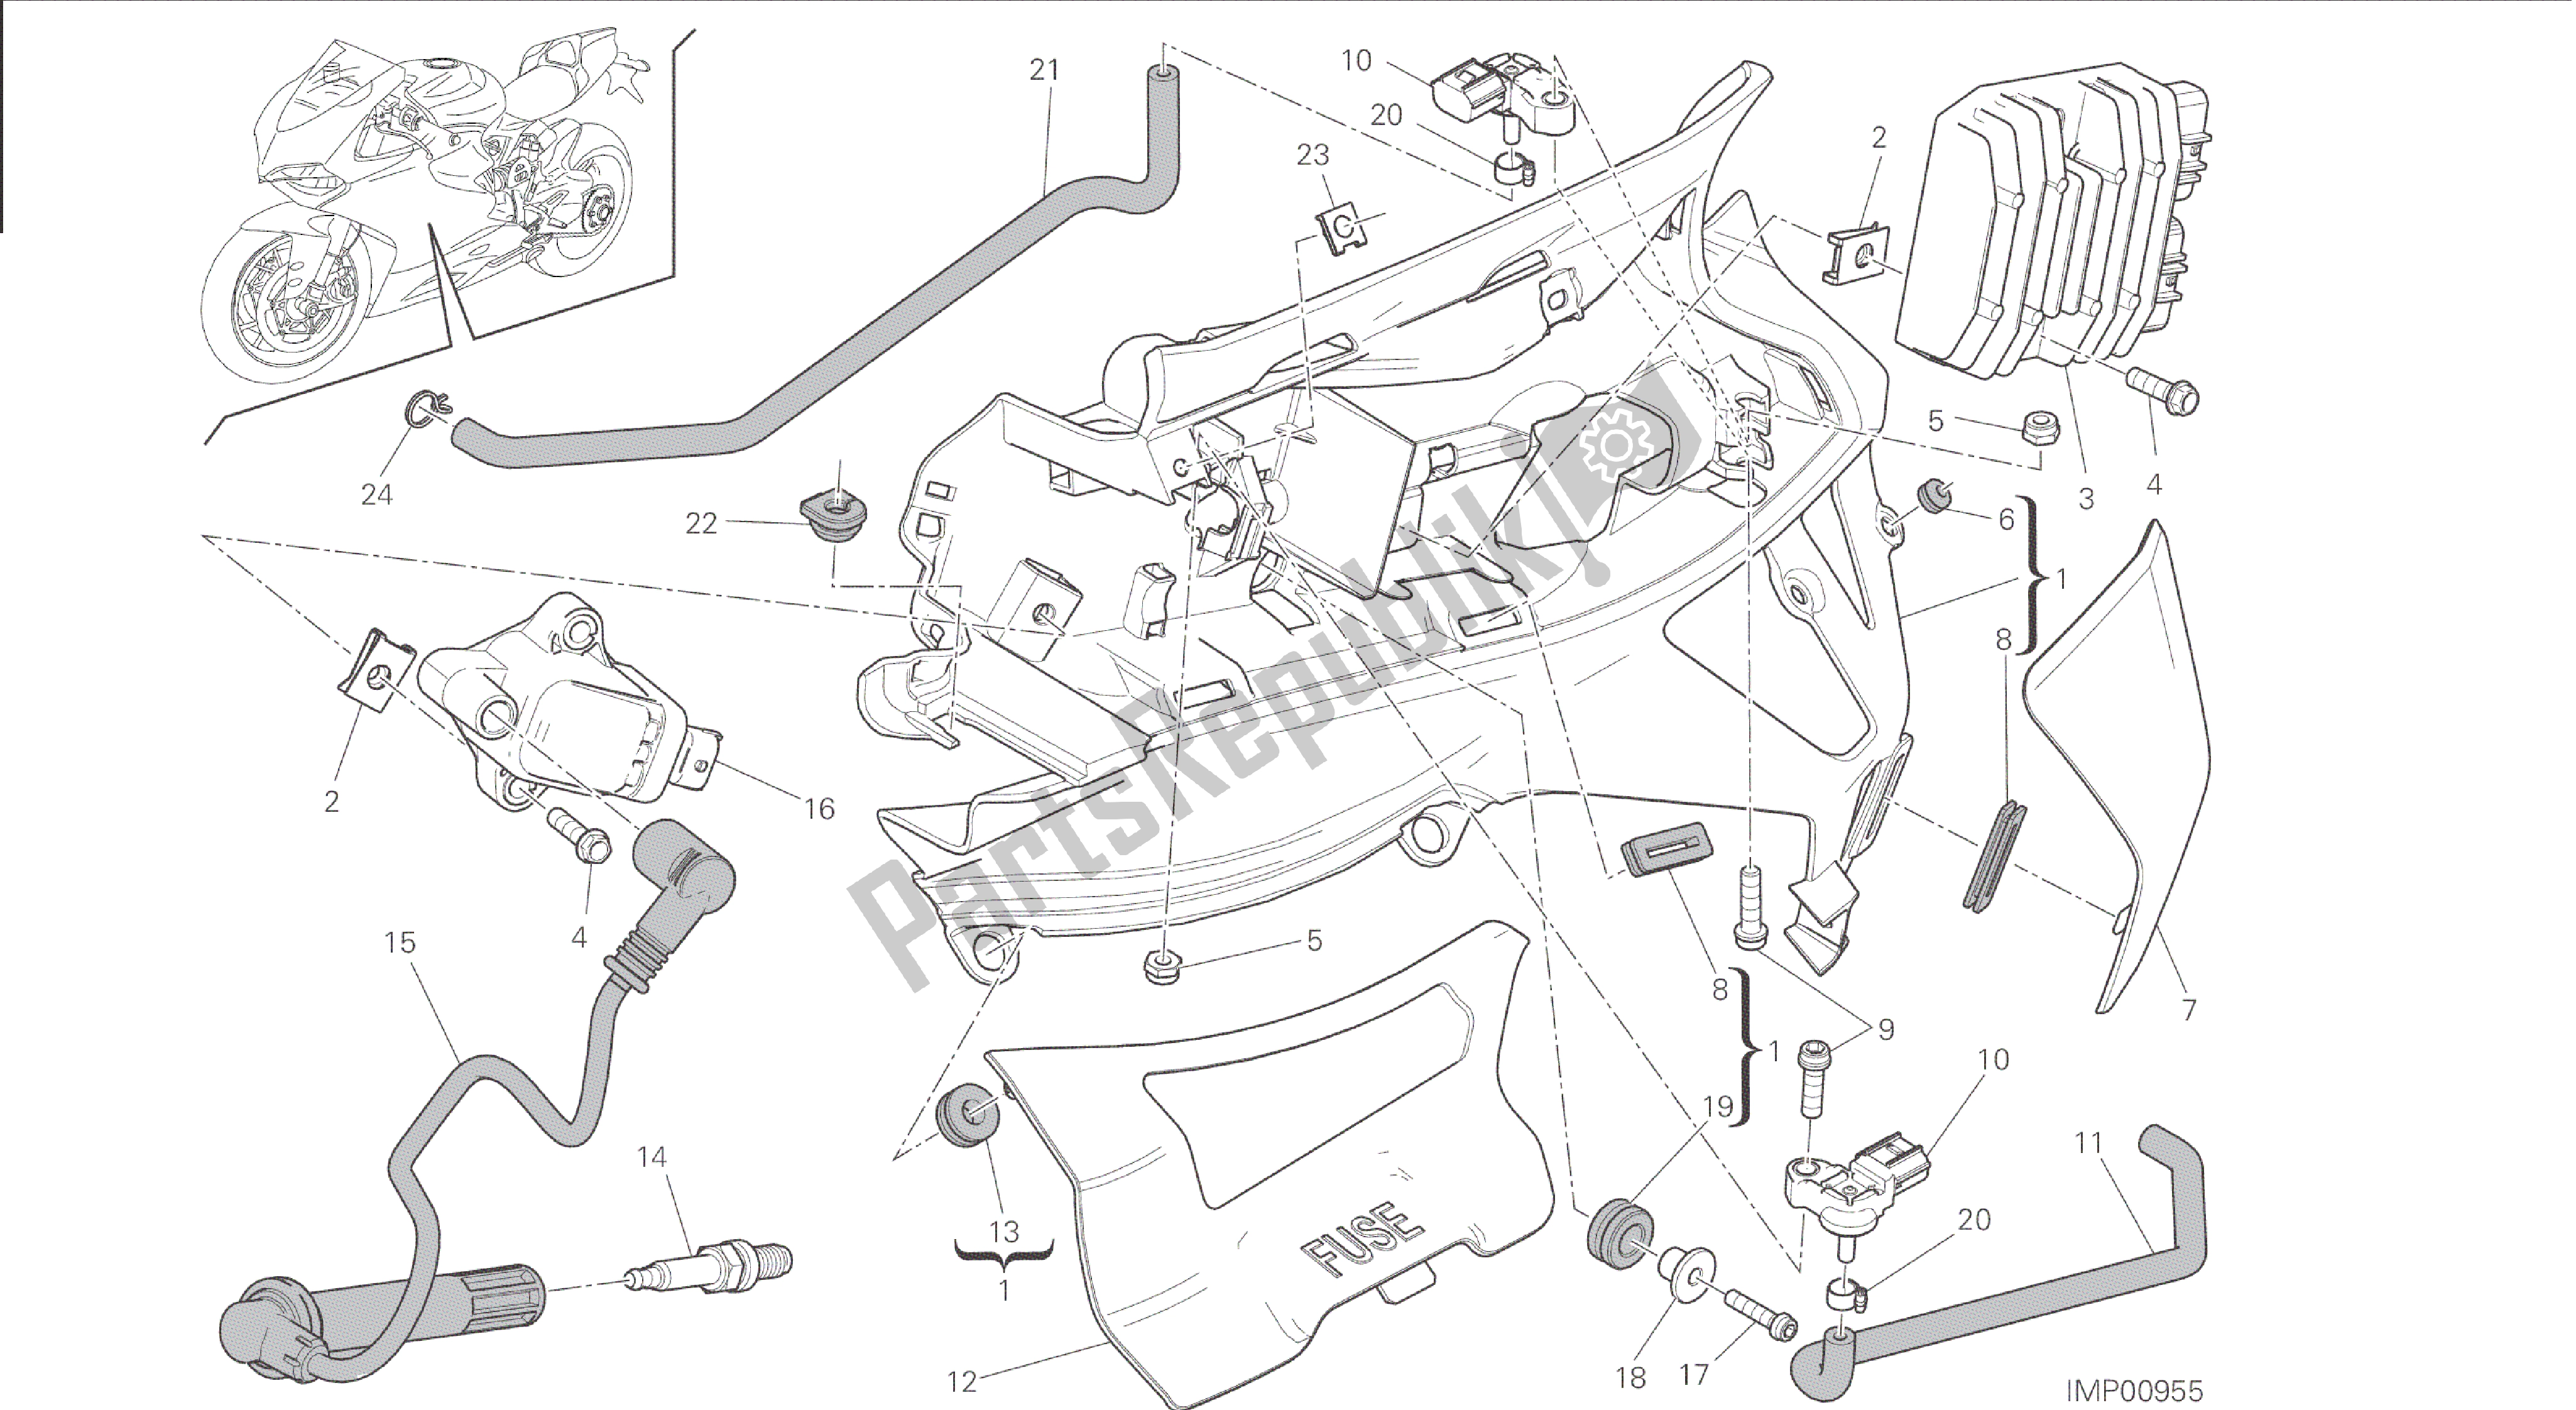 Todas las partes para Dibujo 018 - Impianto Elettrico Sinistro [mod: 1199r; Xst: Aus, Eur, Fra, Jap, Twn] Grupo Eléctrico de Ducati Panigale 1198 2015